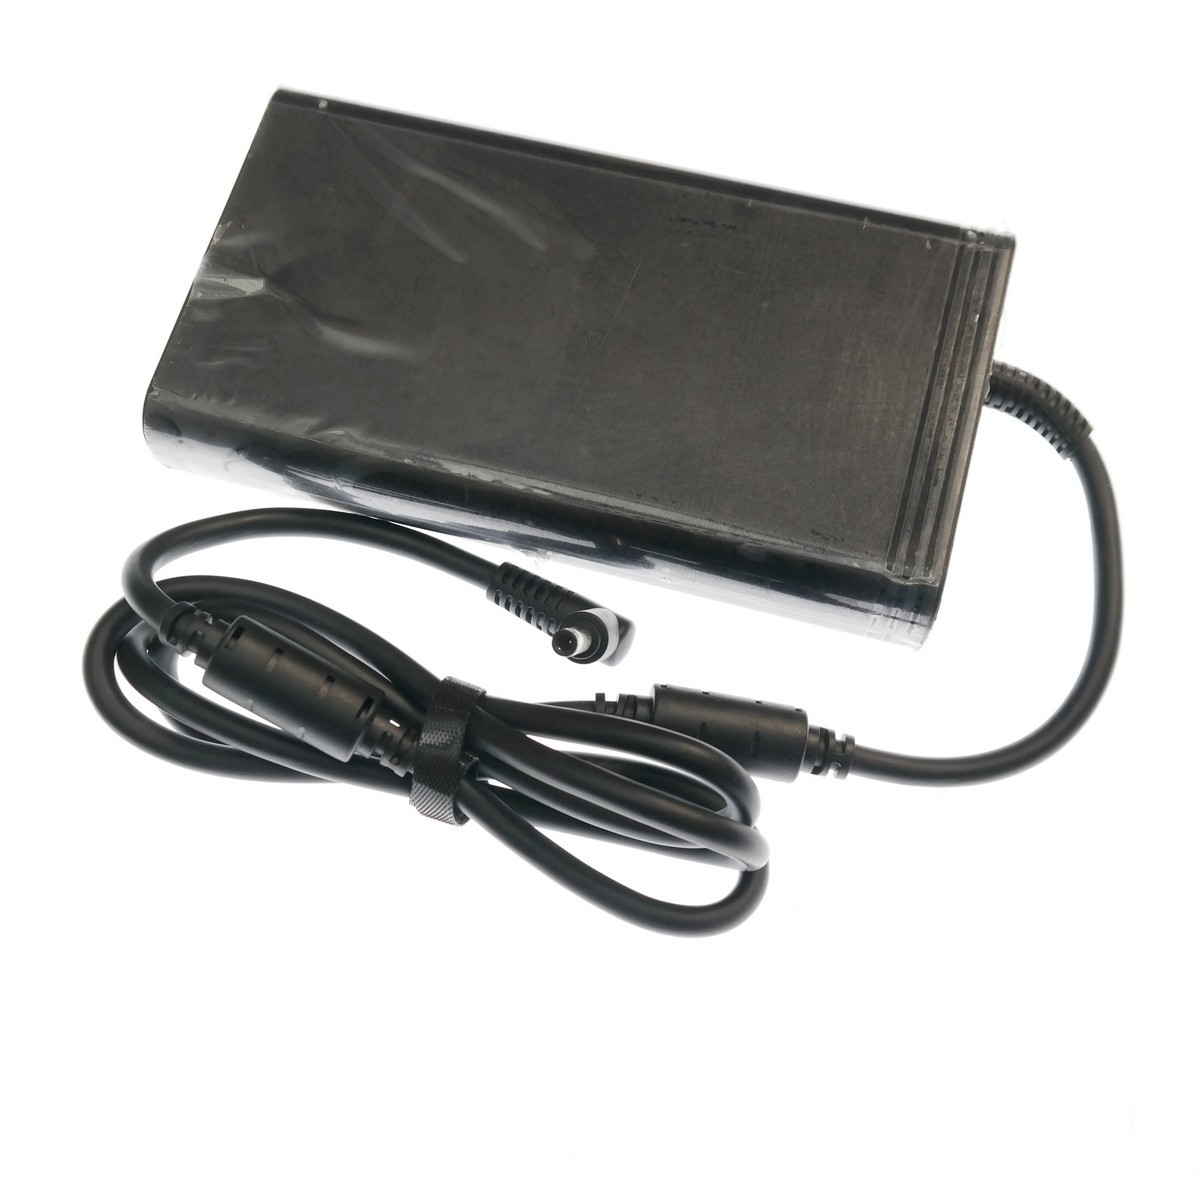 Зарядка для ноутбука Asus ROG Zephyrus M GM501 GU501 6.0x3.7 230w 19.5v 11,8a под оригинал с силовым кабелем